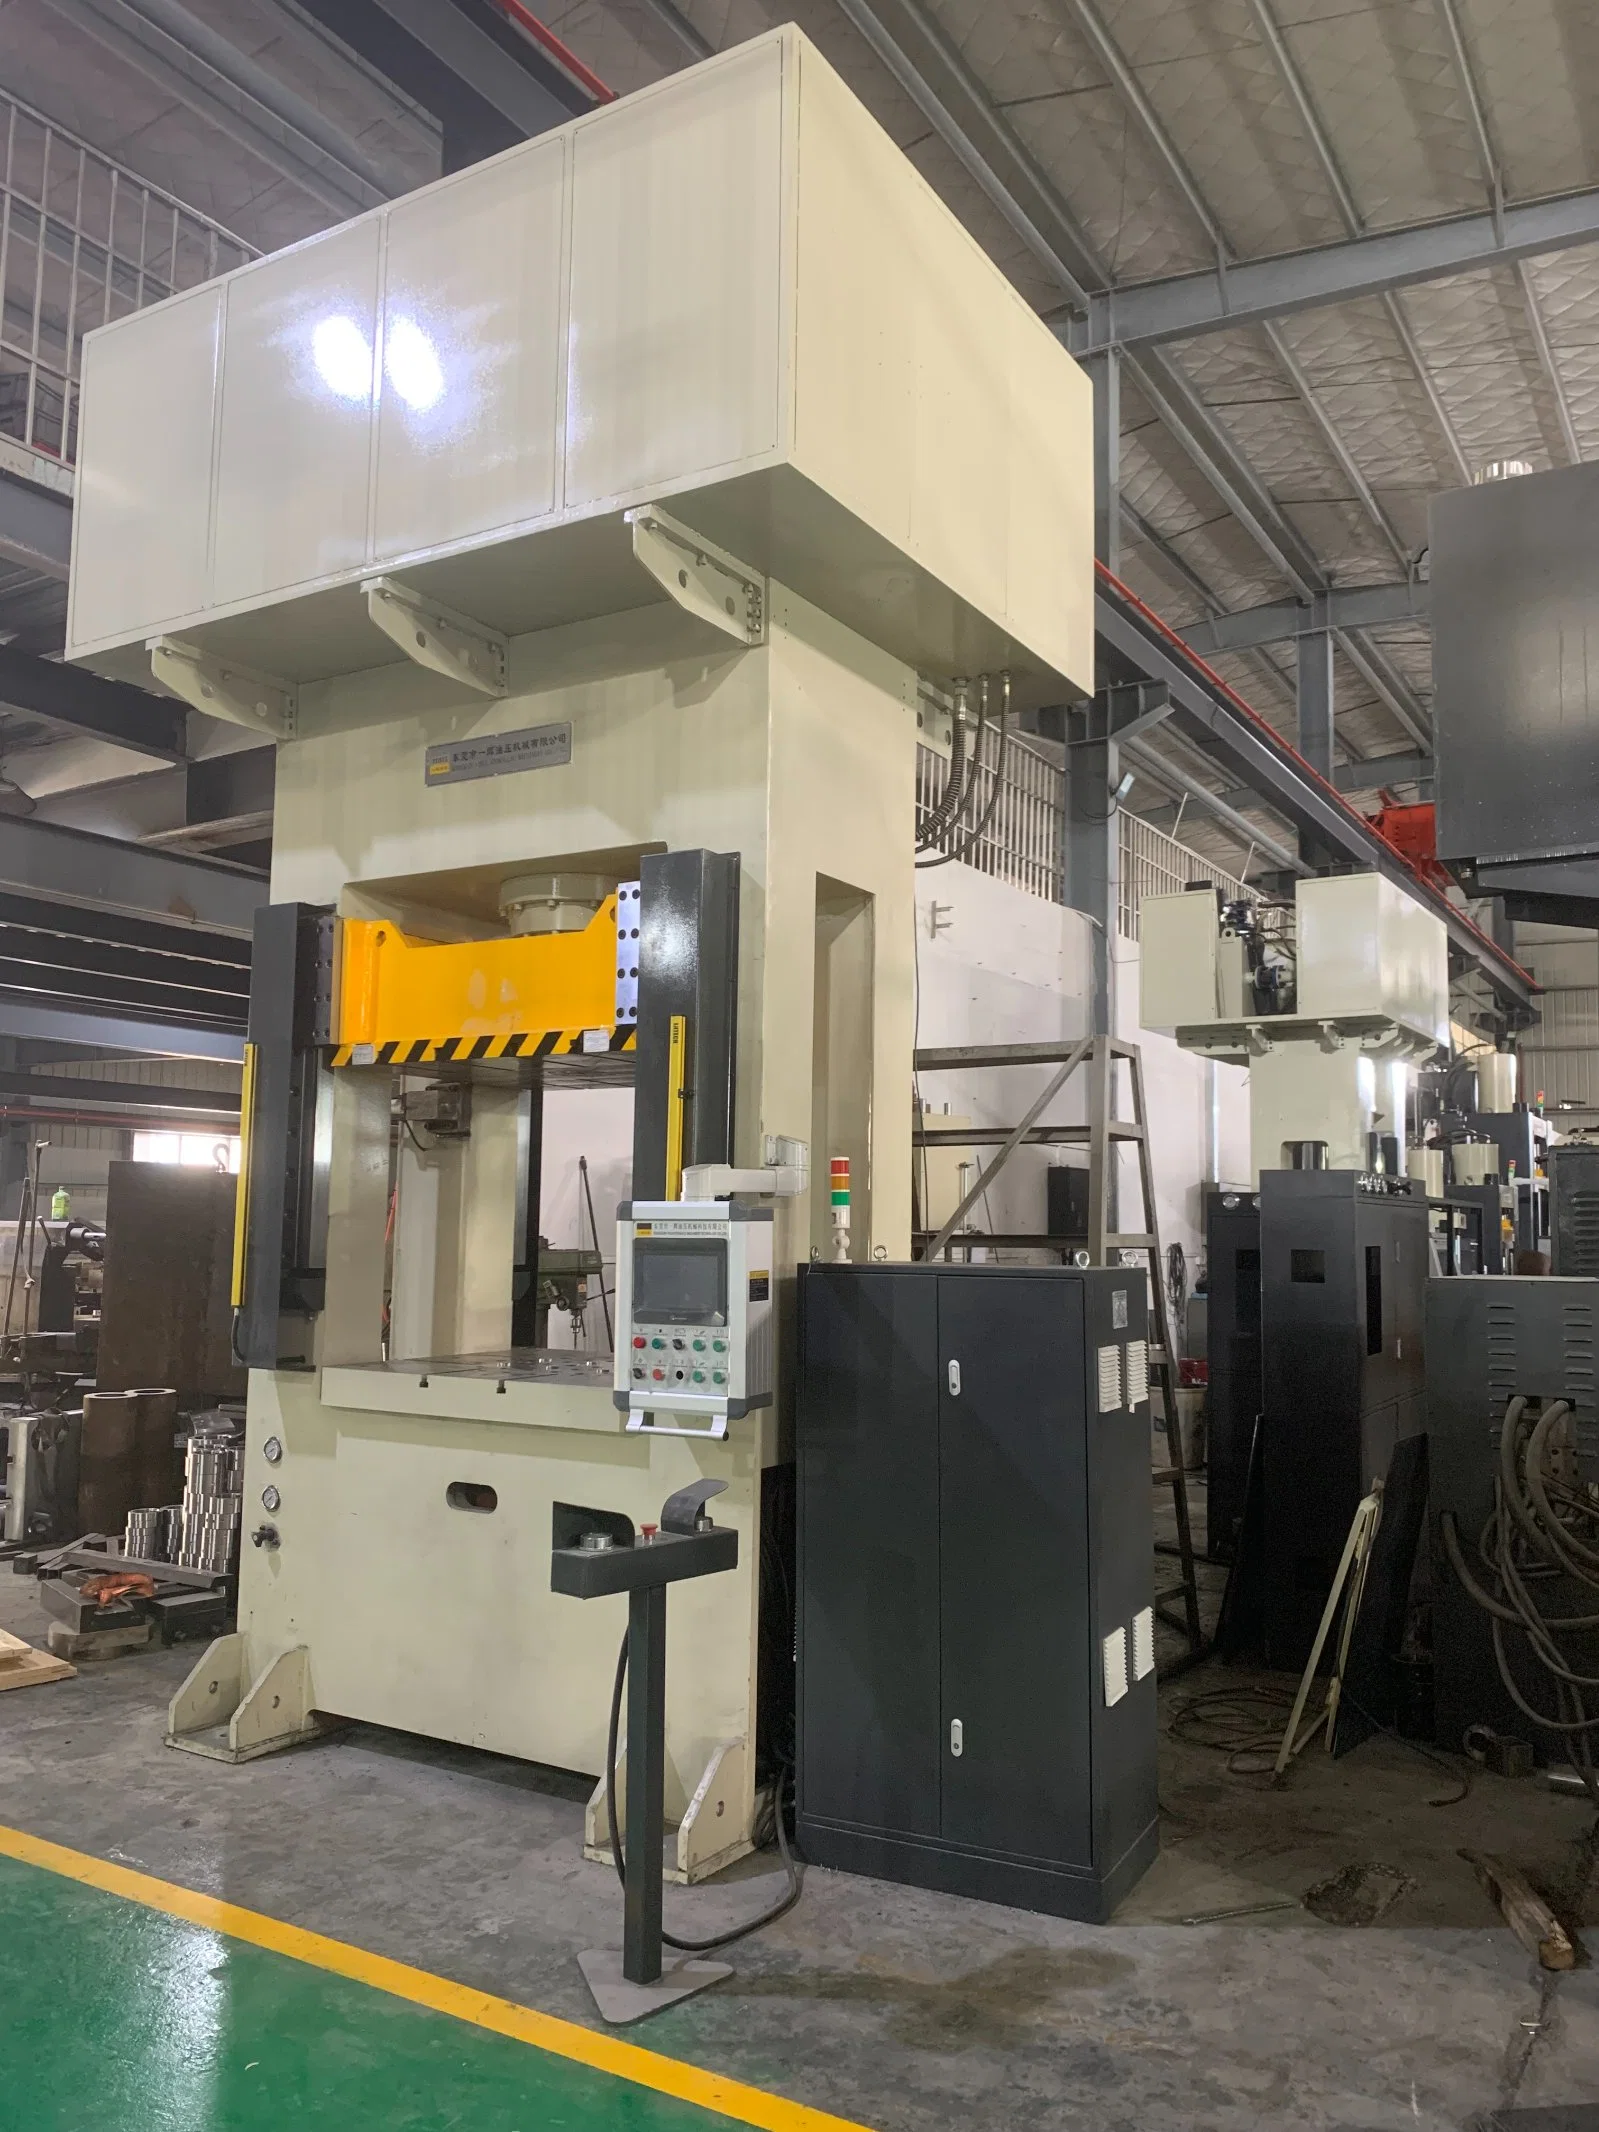 1500 Ton Automatische hydraulische Kaltschmiede Presse Maschine für Metall Formgebung